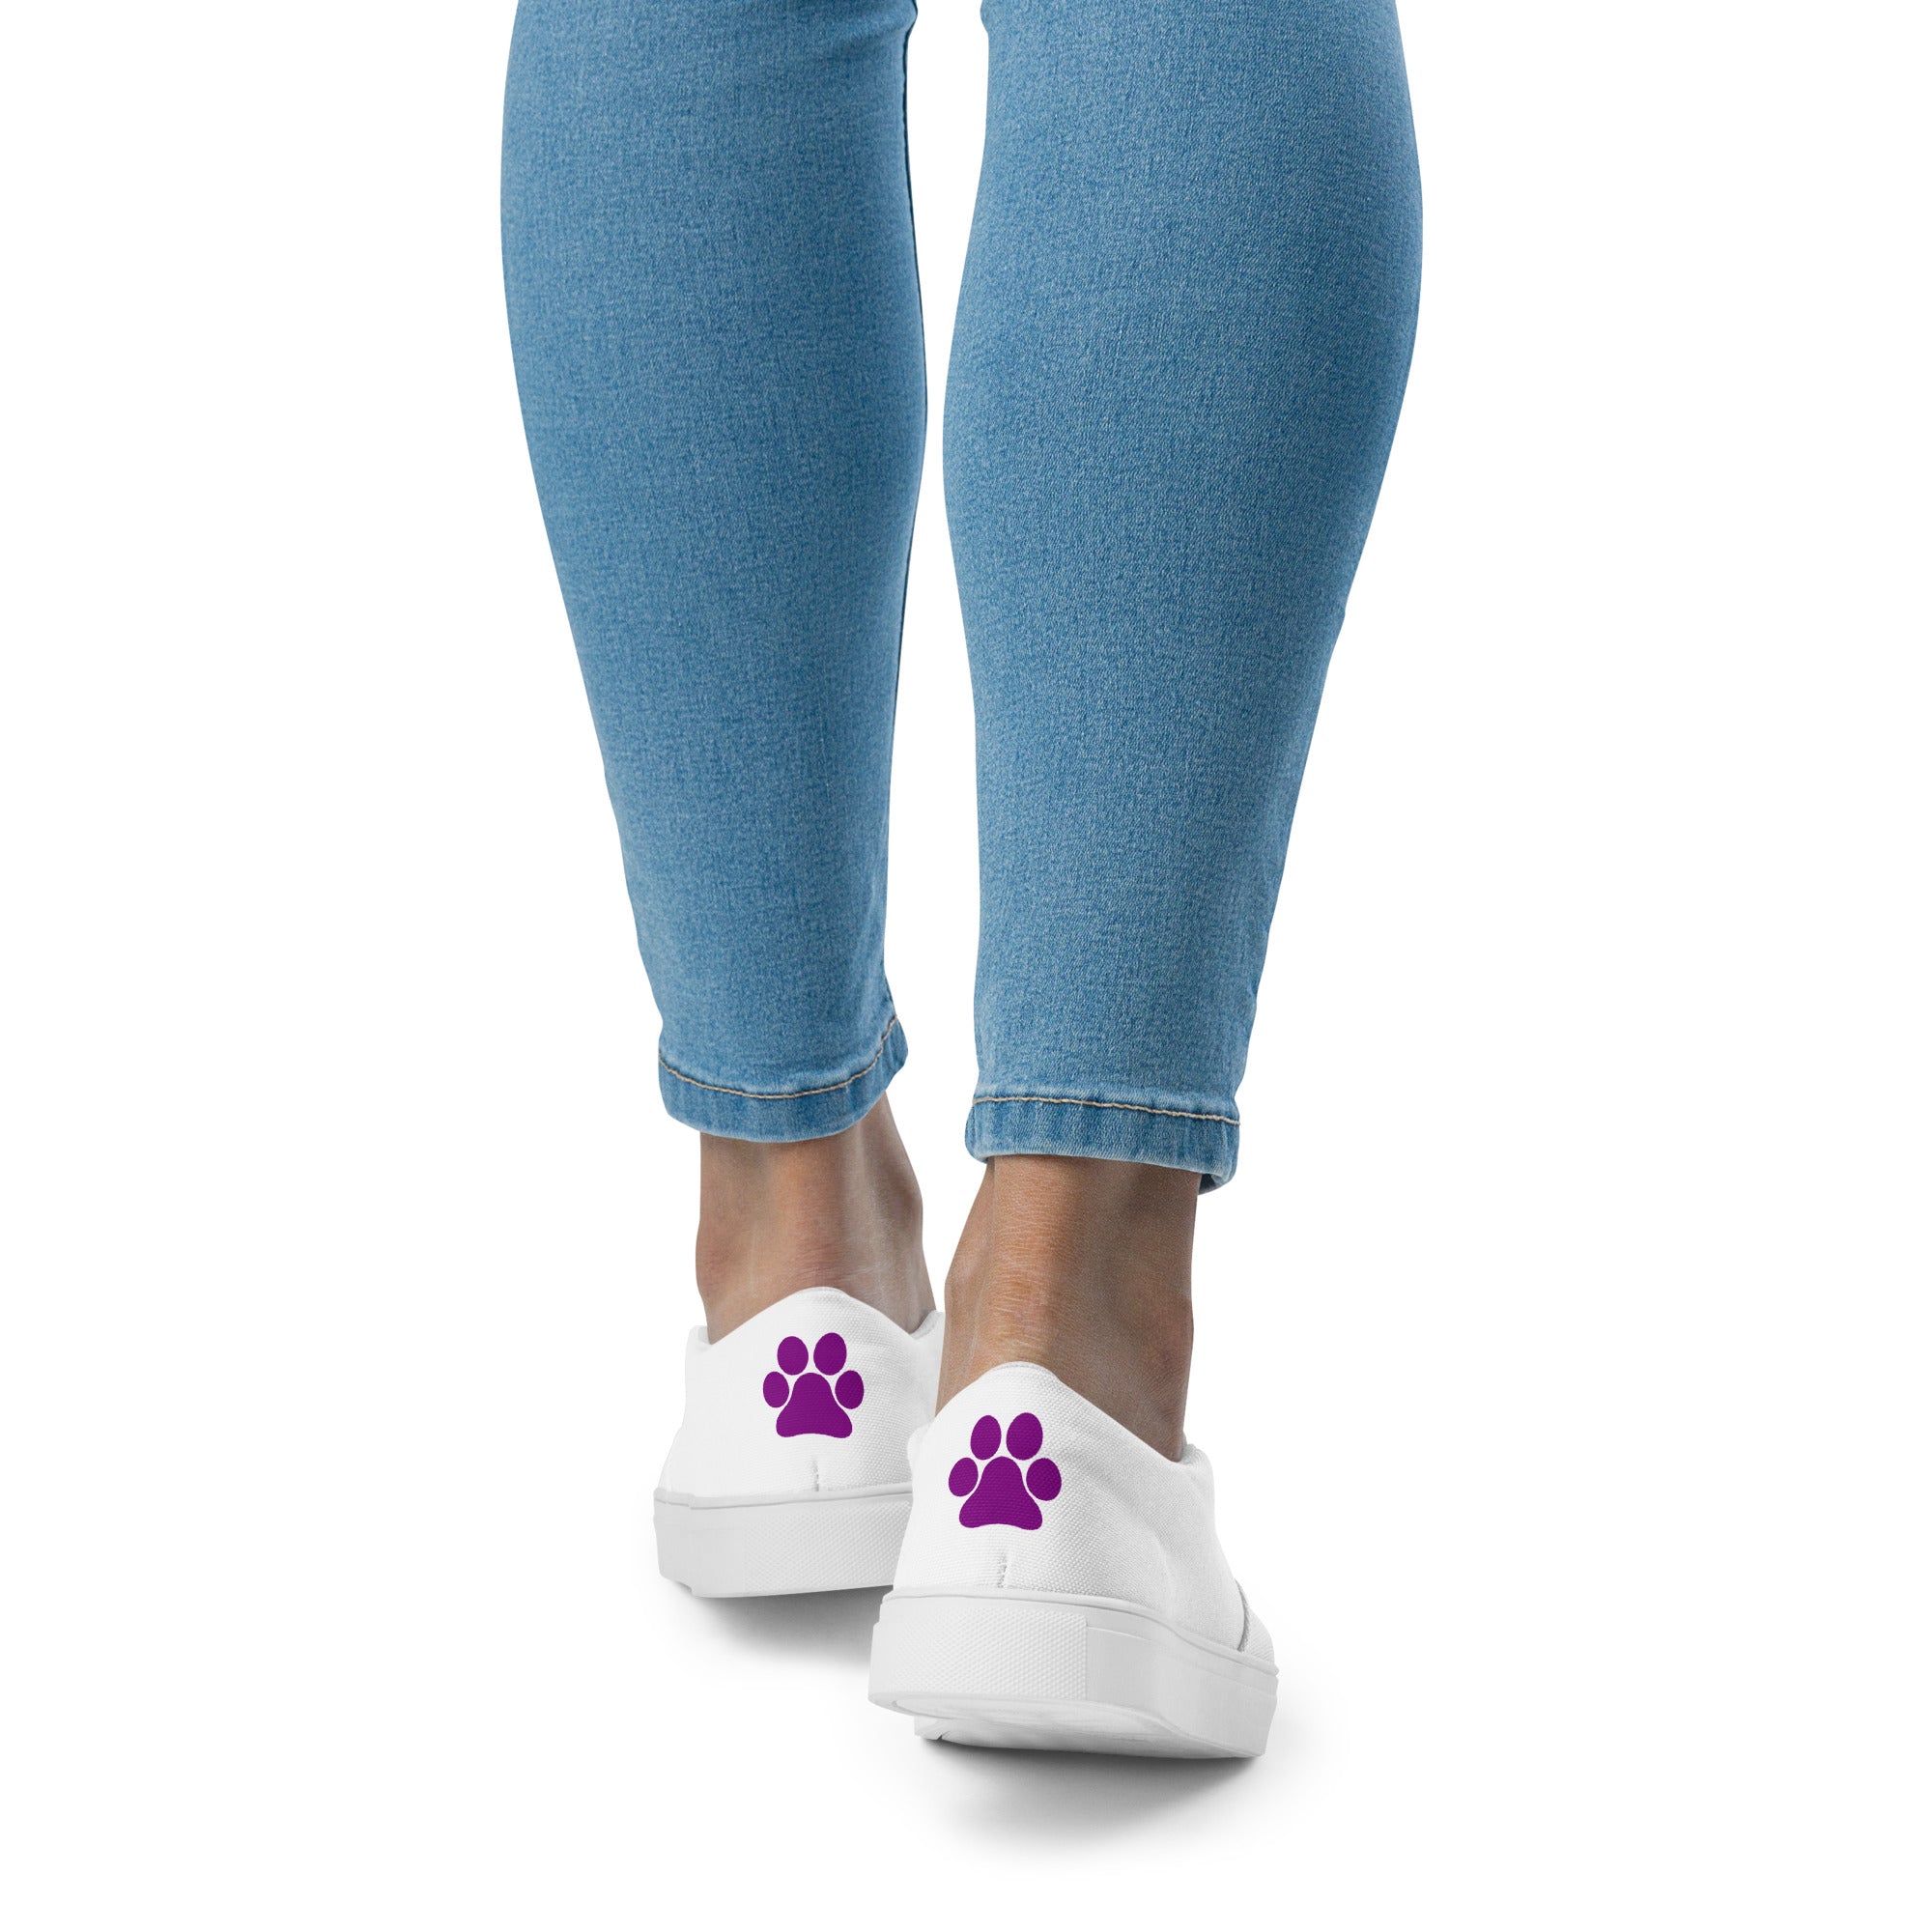 Women’s slip-on Purple Paw shoes